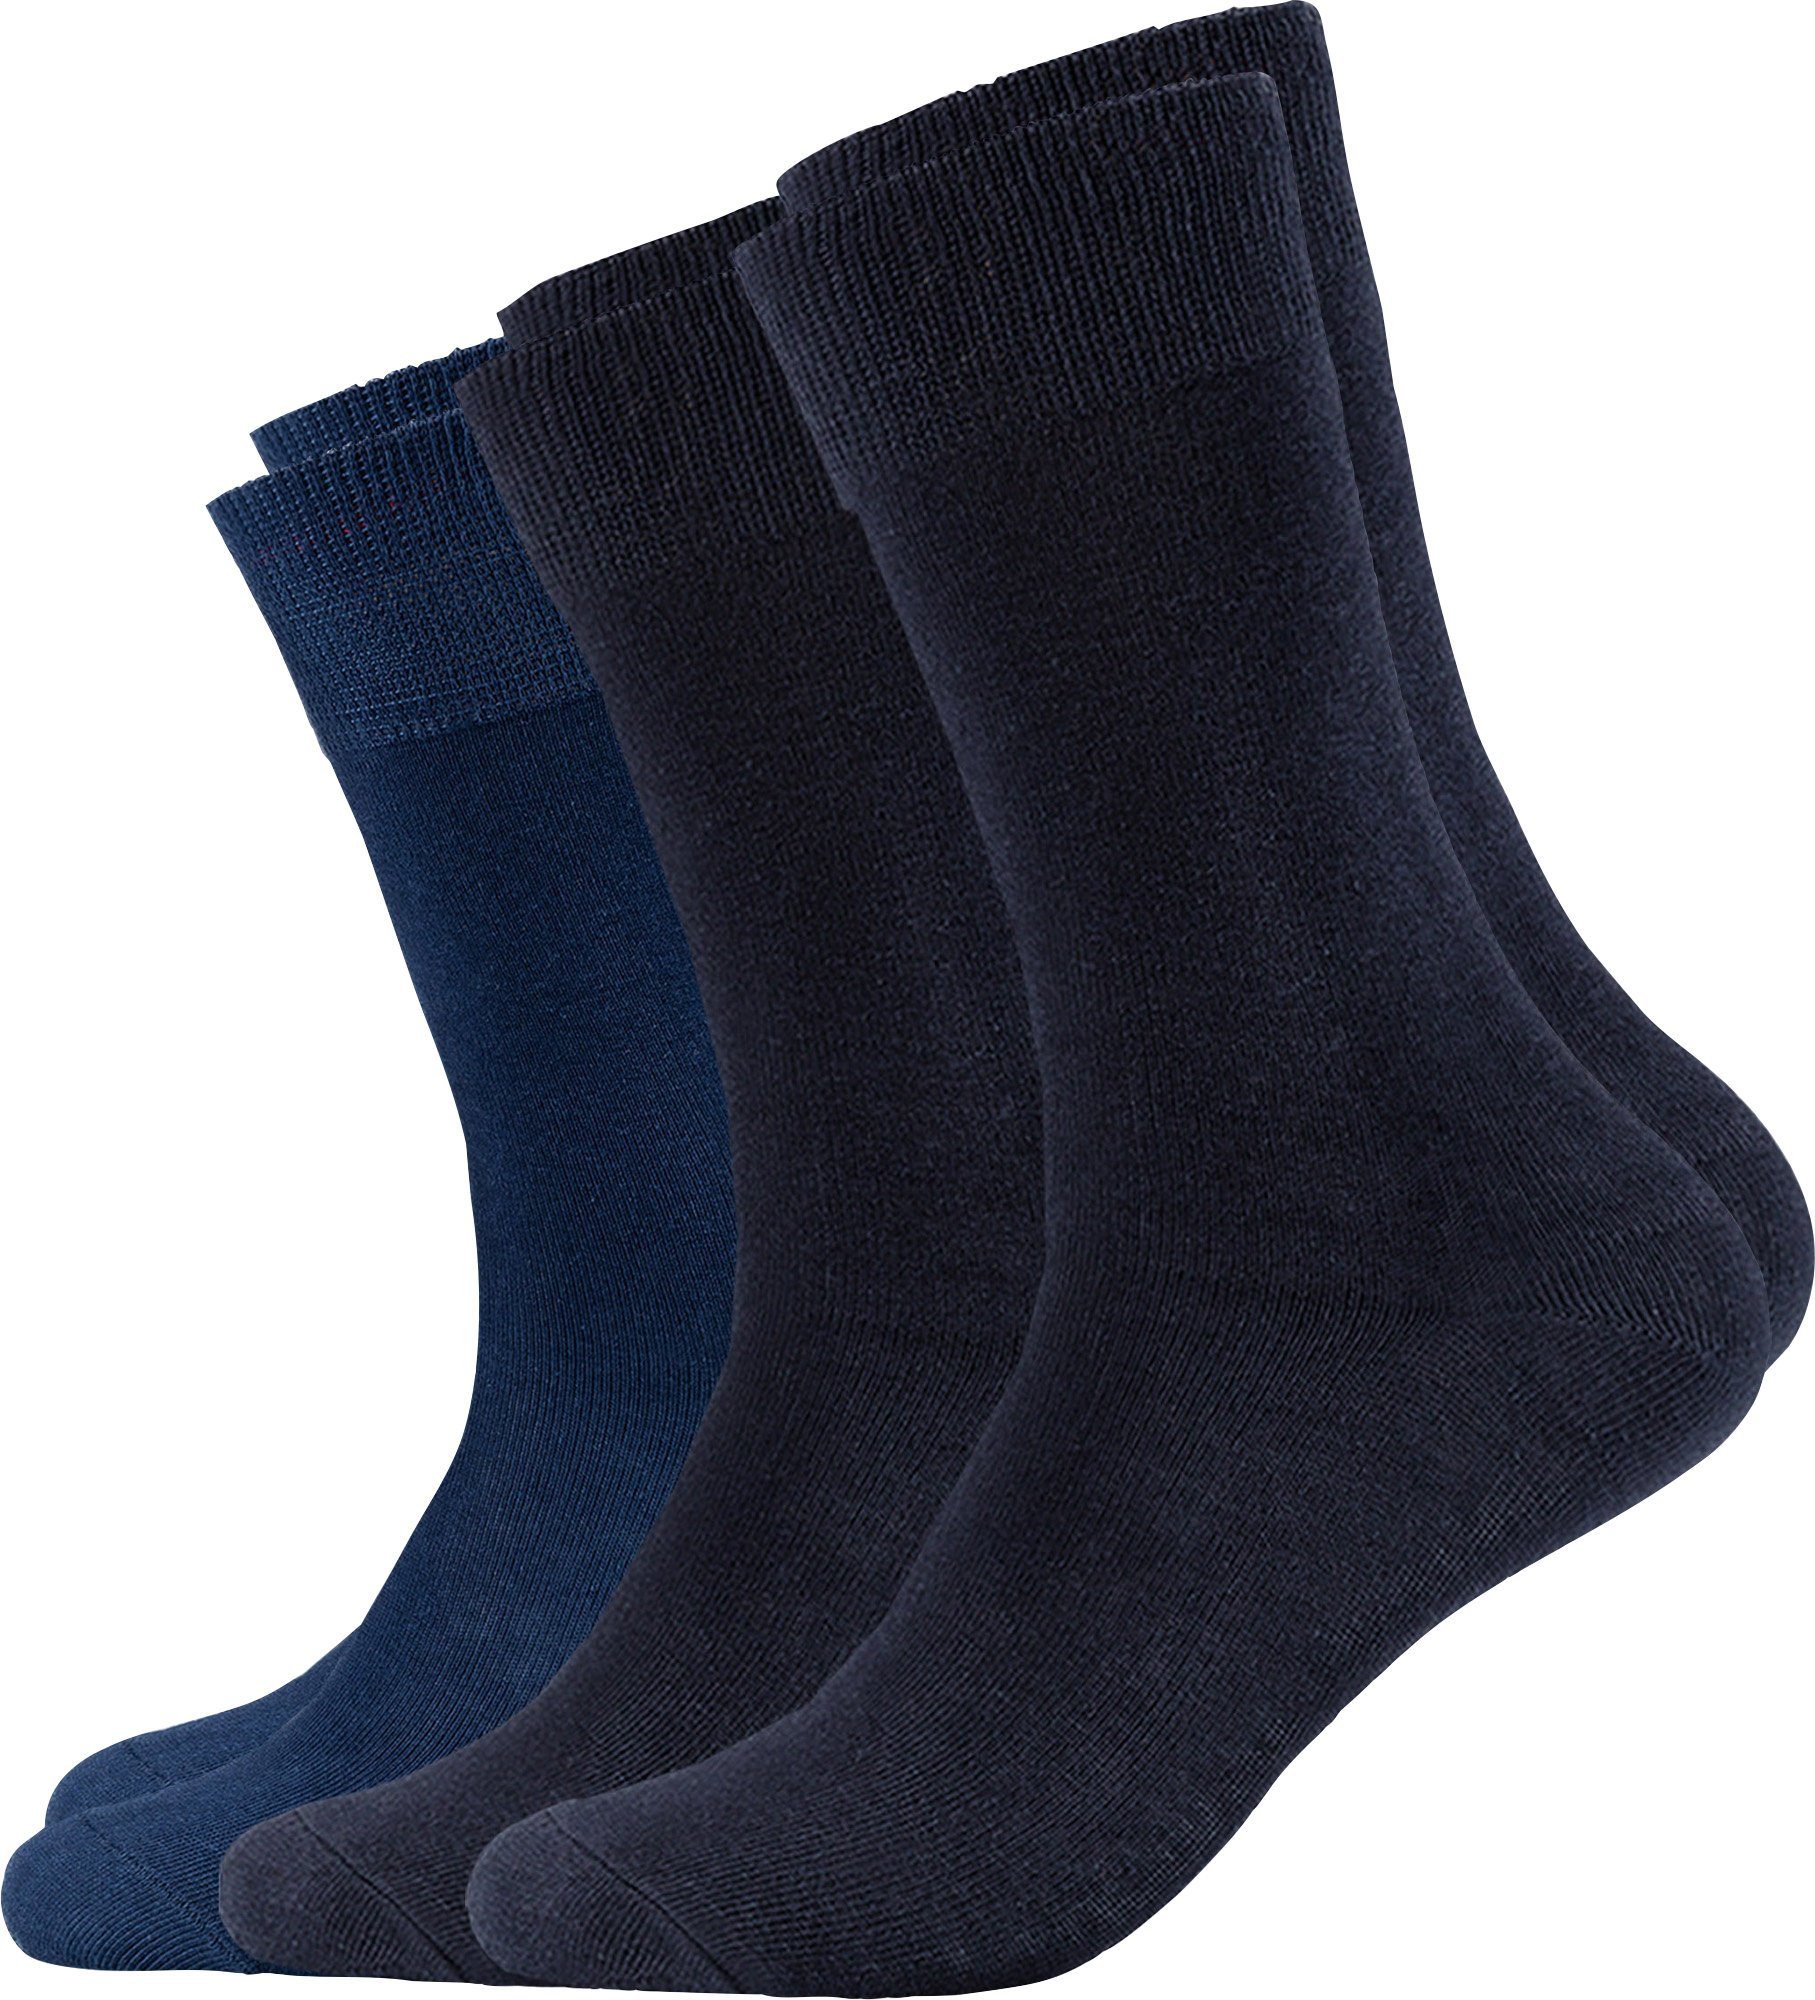 s.Oliver Socken marine/blau Paar 3 Unisex-Socken Uni